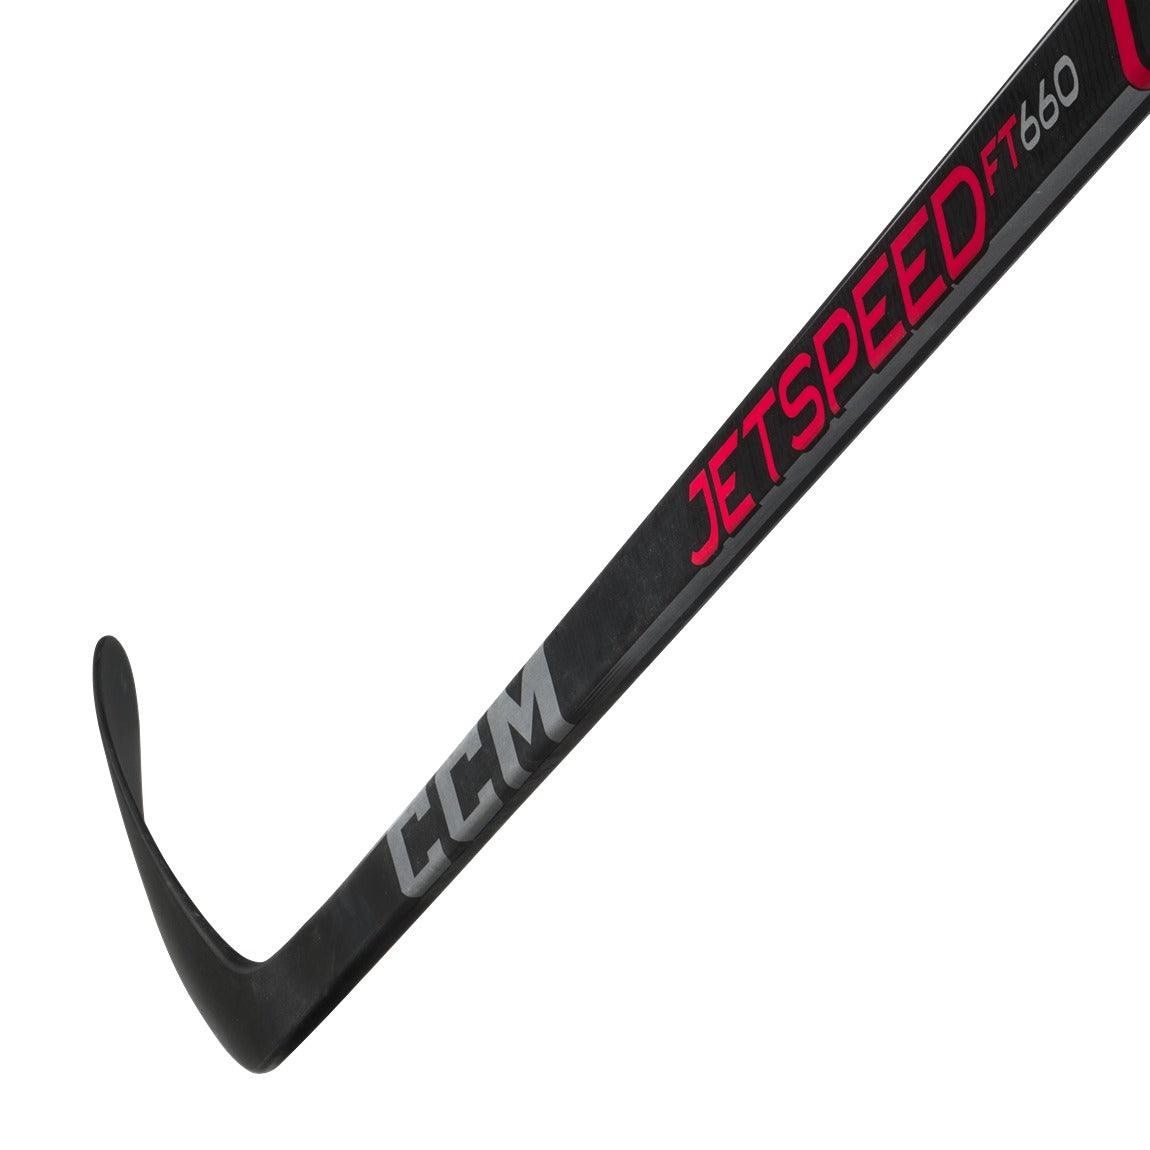 CCM Jetspeed FT660 Hockey Stick - Senior